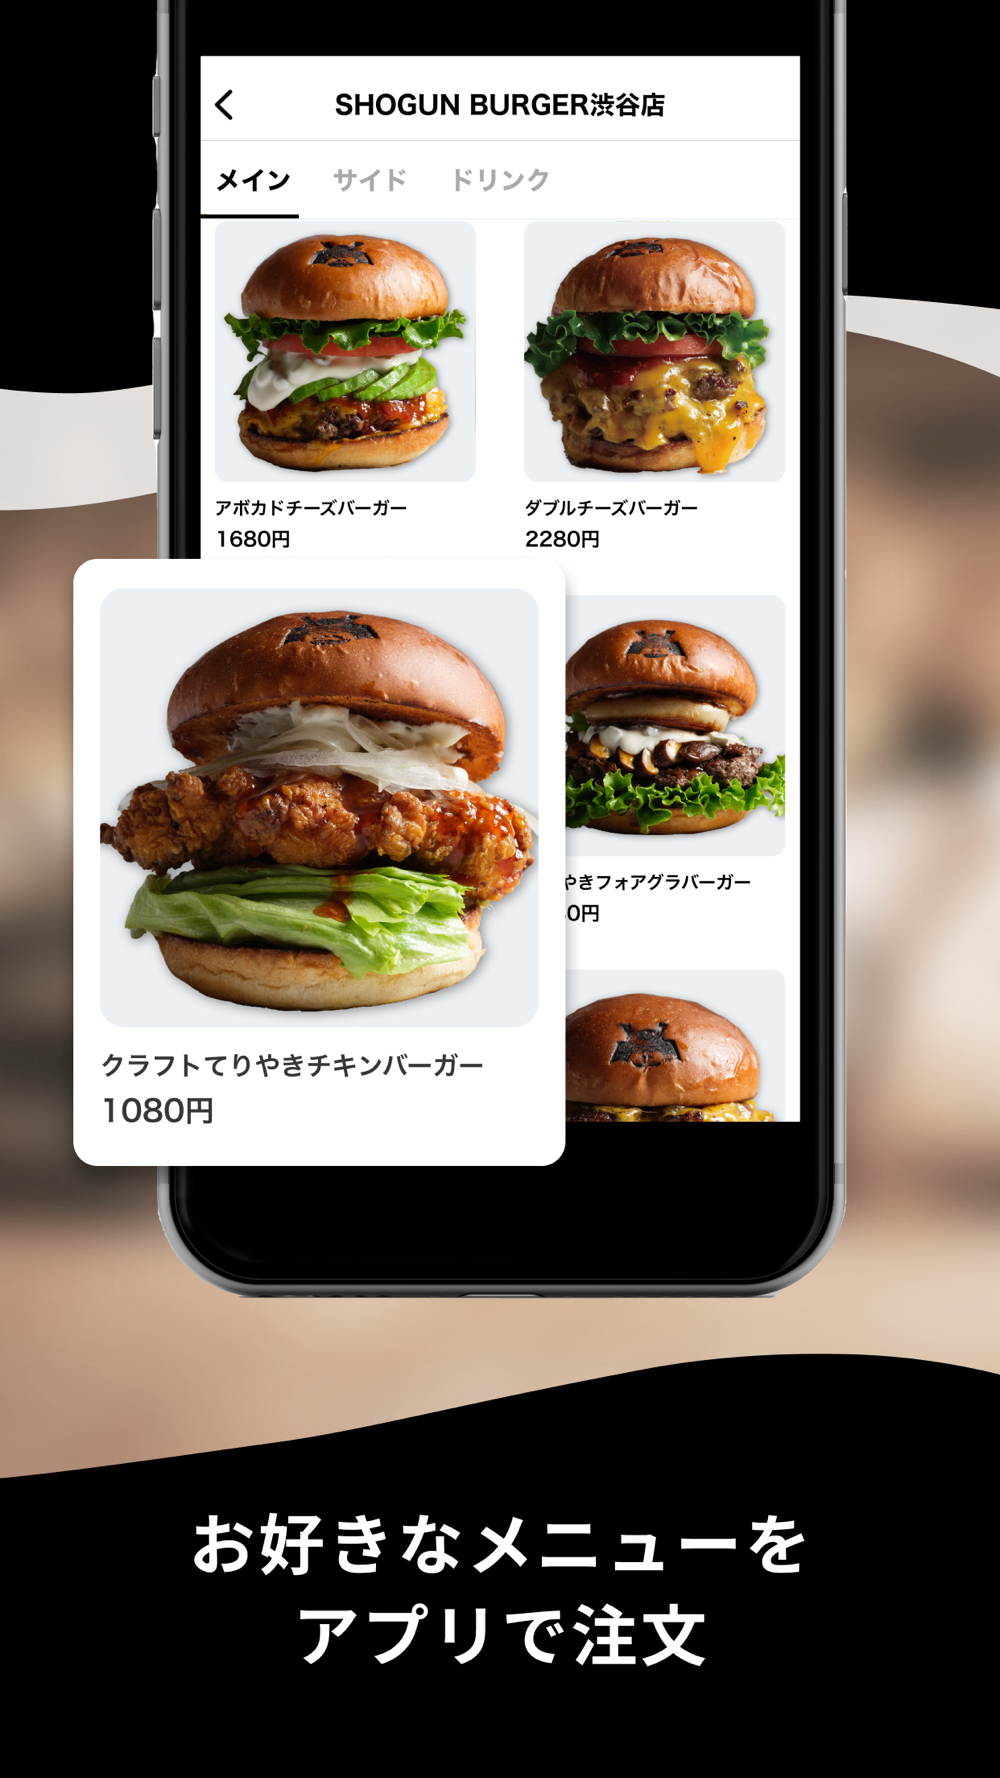 Shogun chicken burger